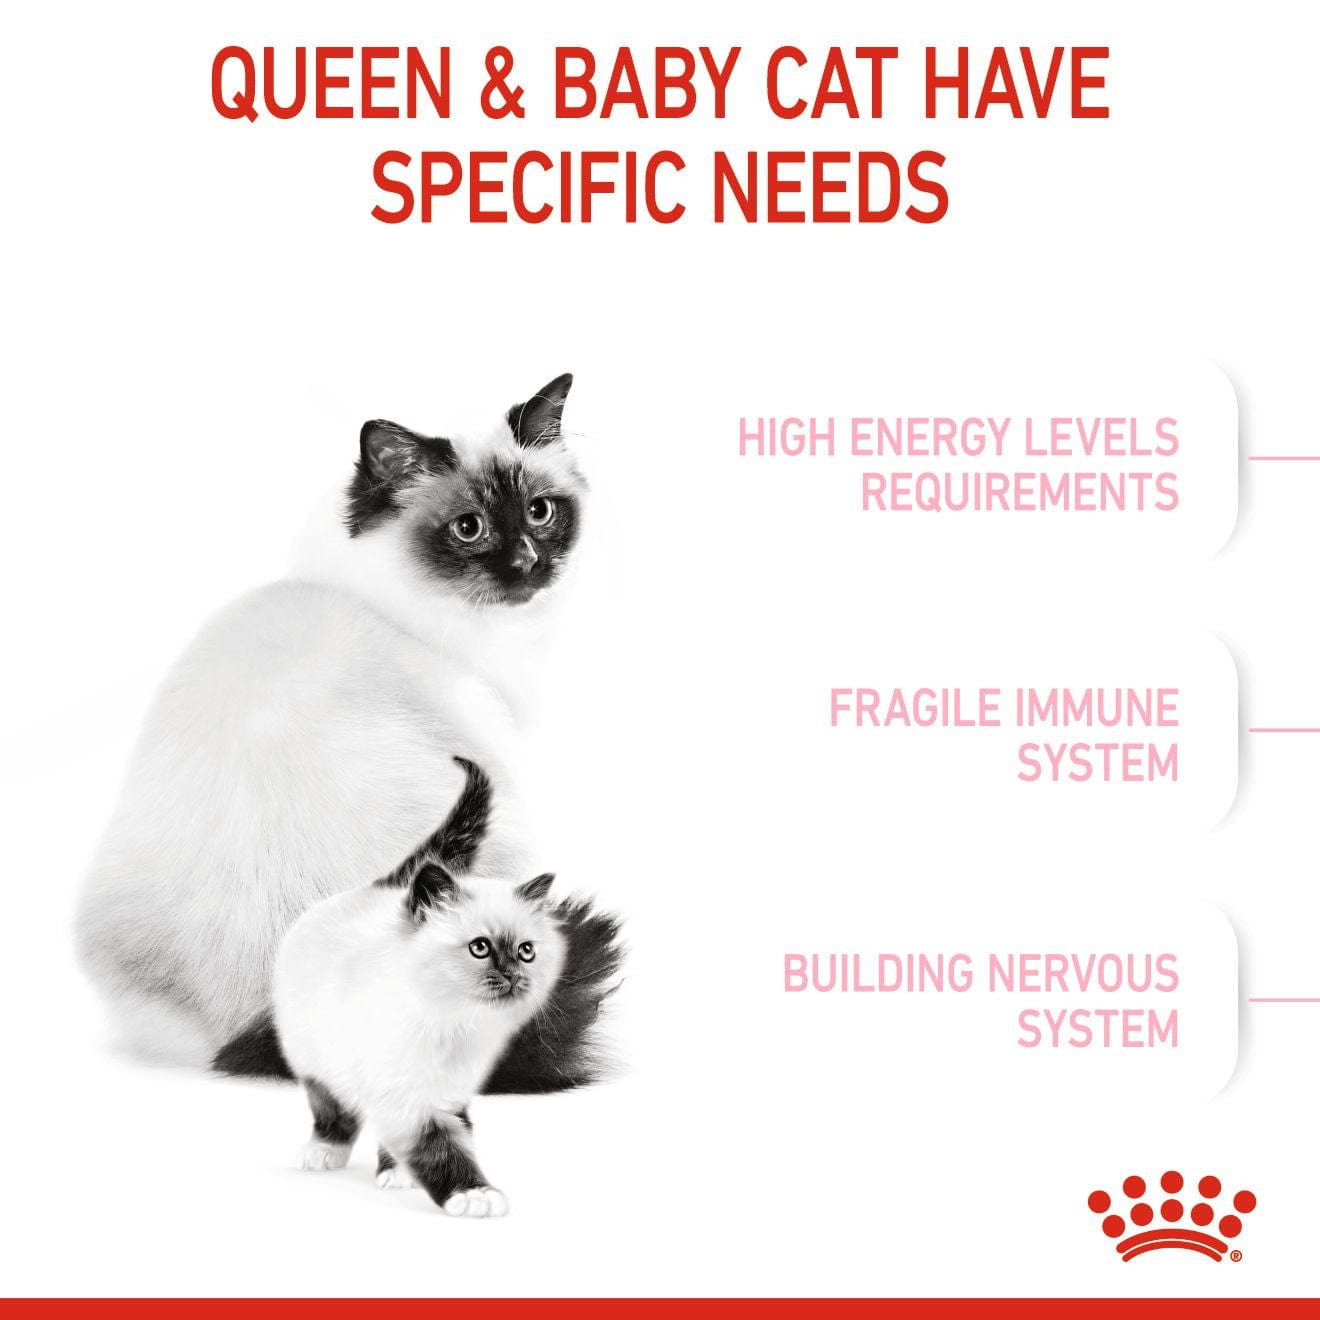 التغذية الصحية للقطط الأم والقطط 4 كج